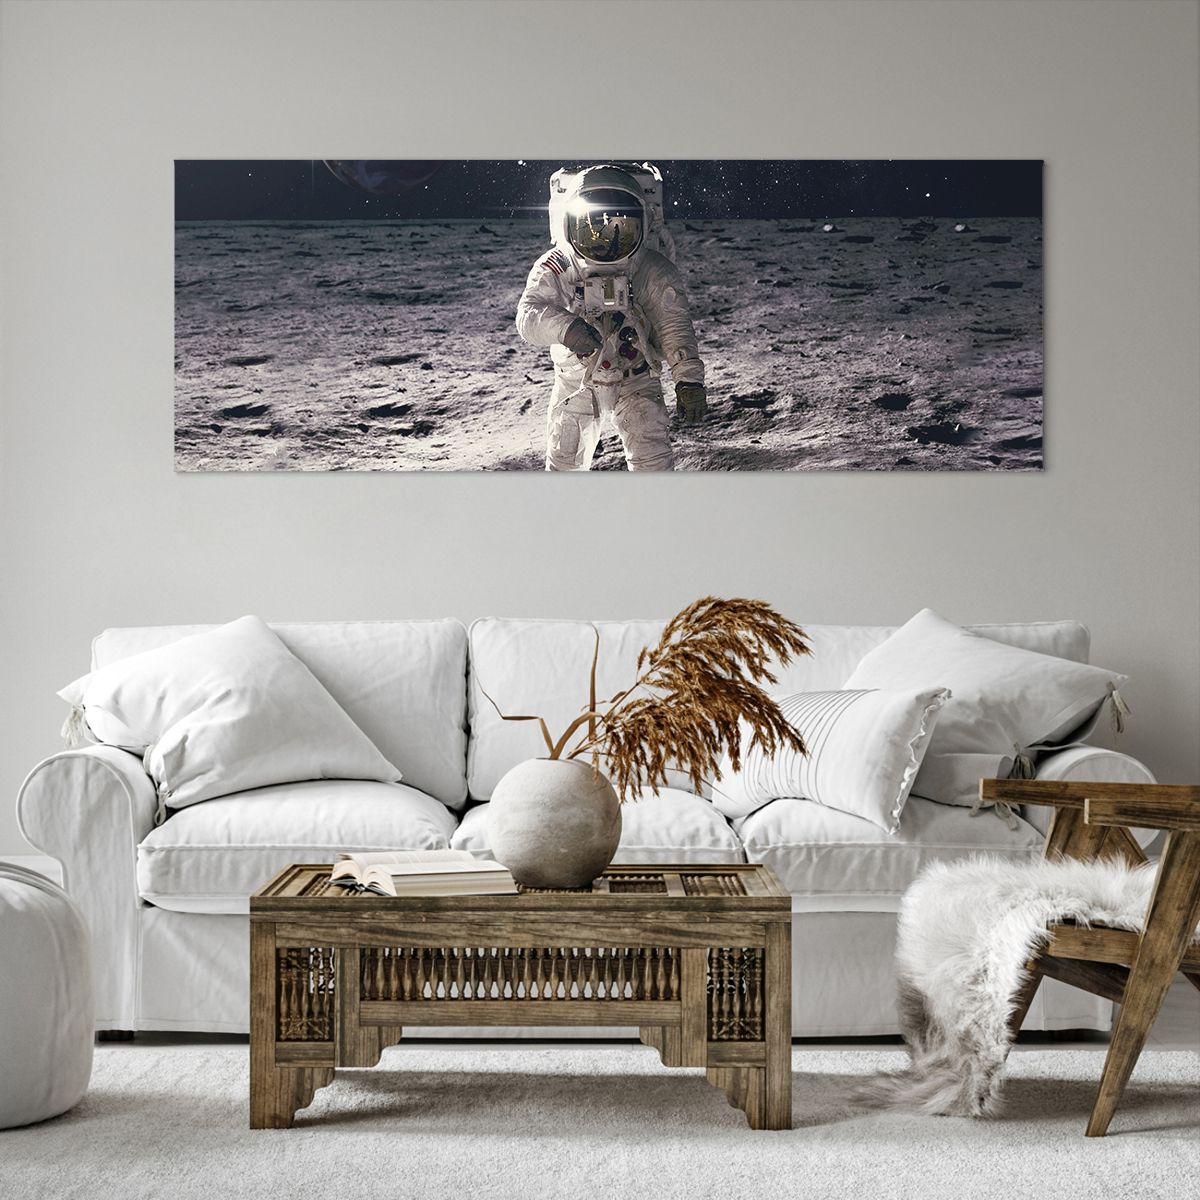 Schilderen op canvas  Abstractie, Schilderen op canvas  Man Op De Maan, Schilderen op canvas  Astronaut, Schilderen op canvas  Kosmos, Schilderen op canvas  Maan